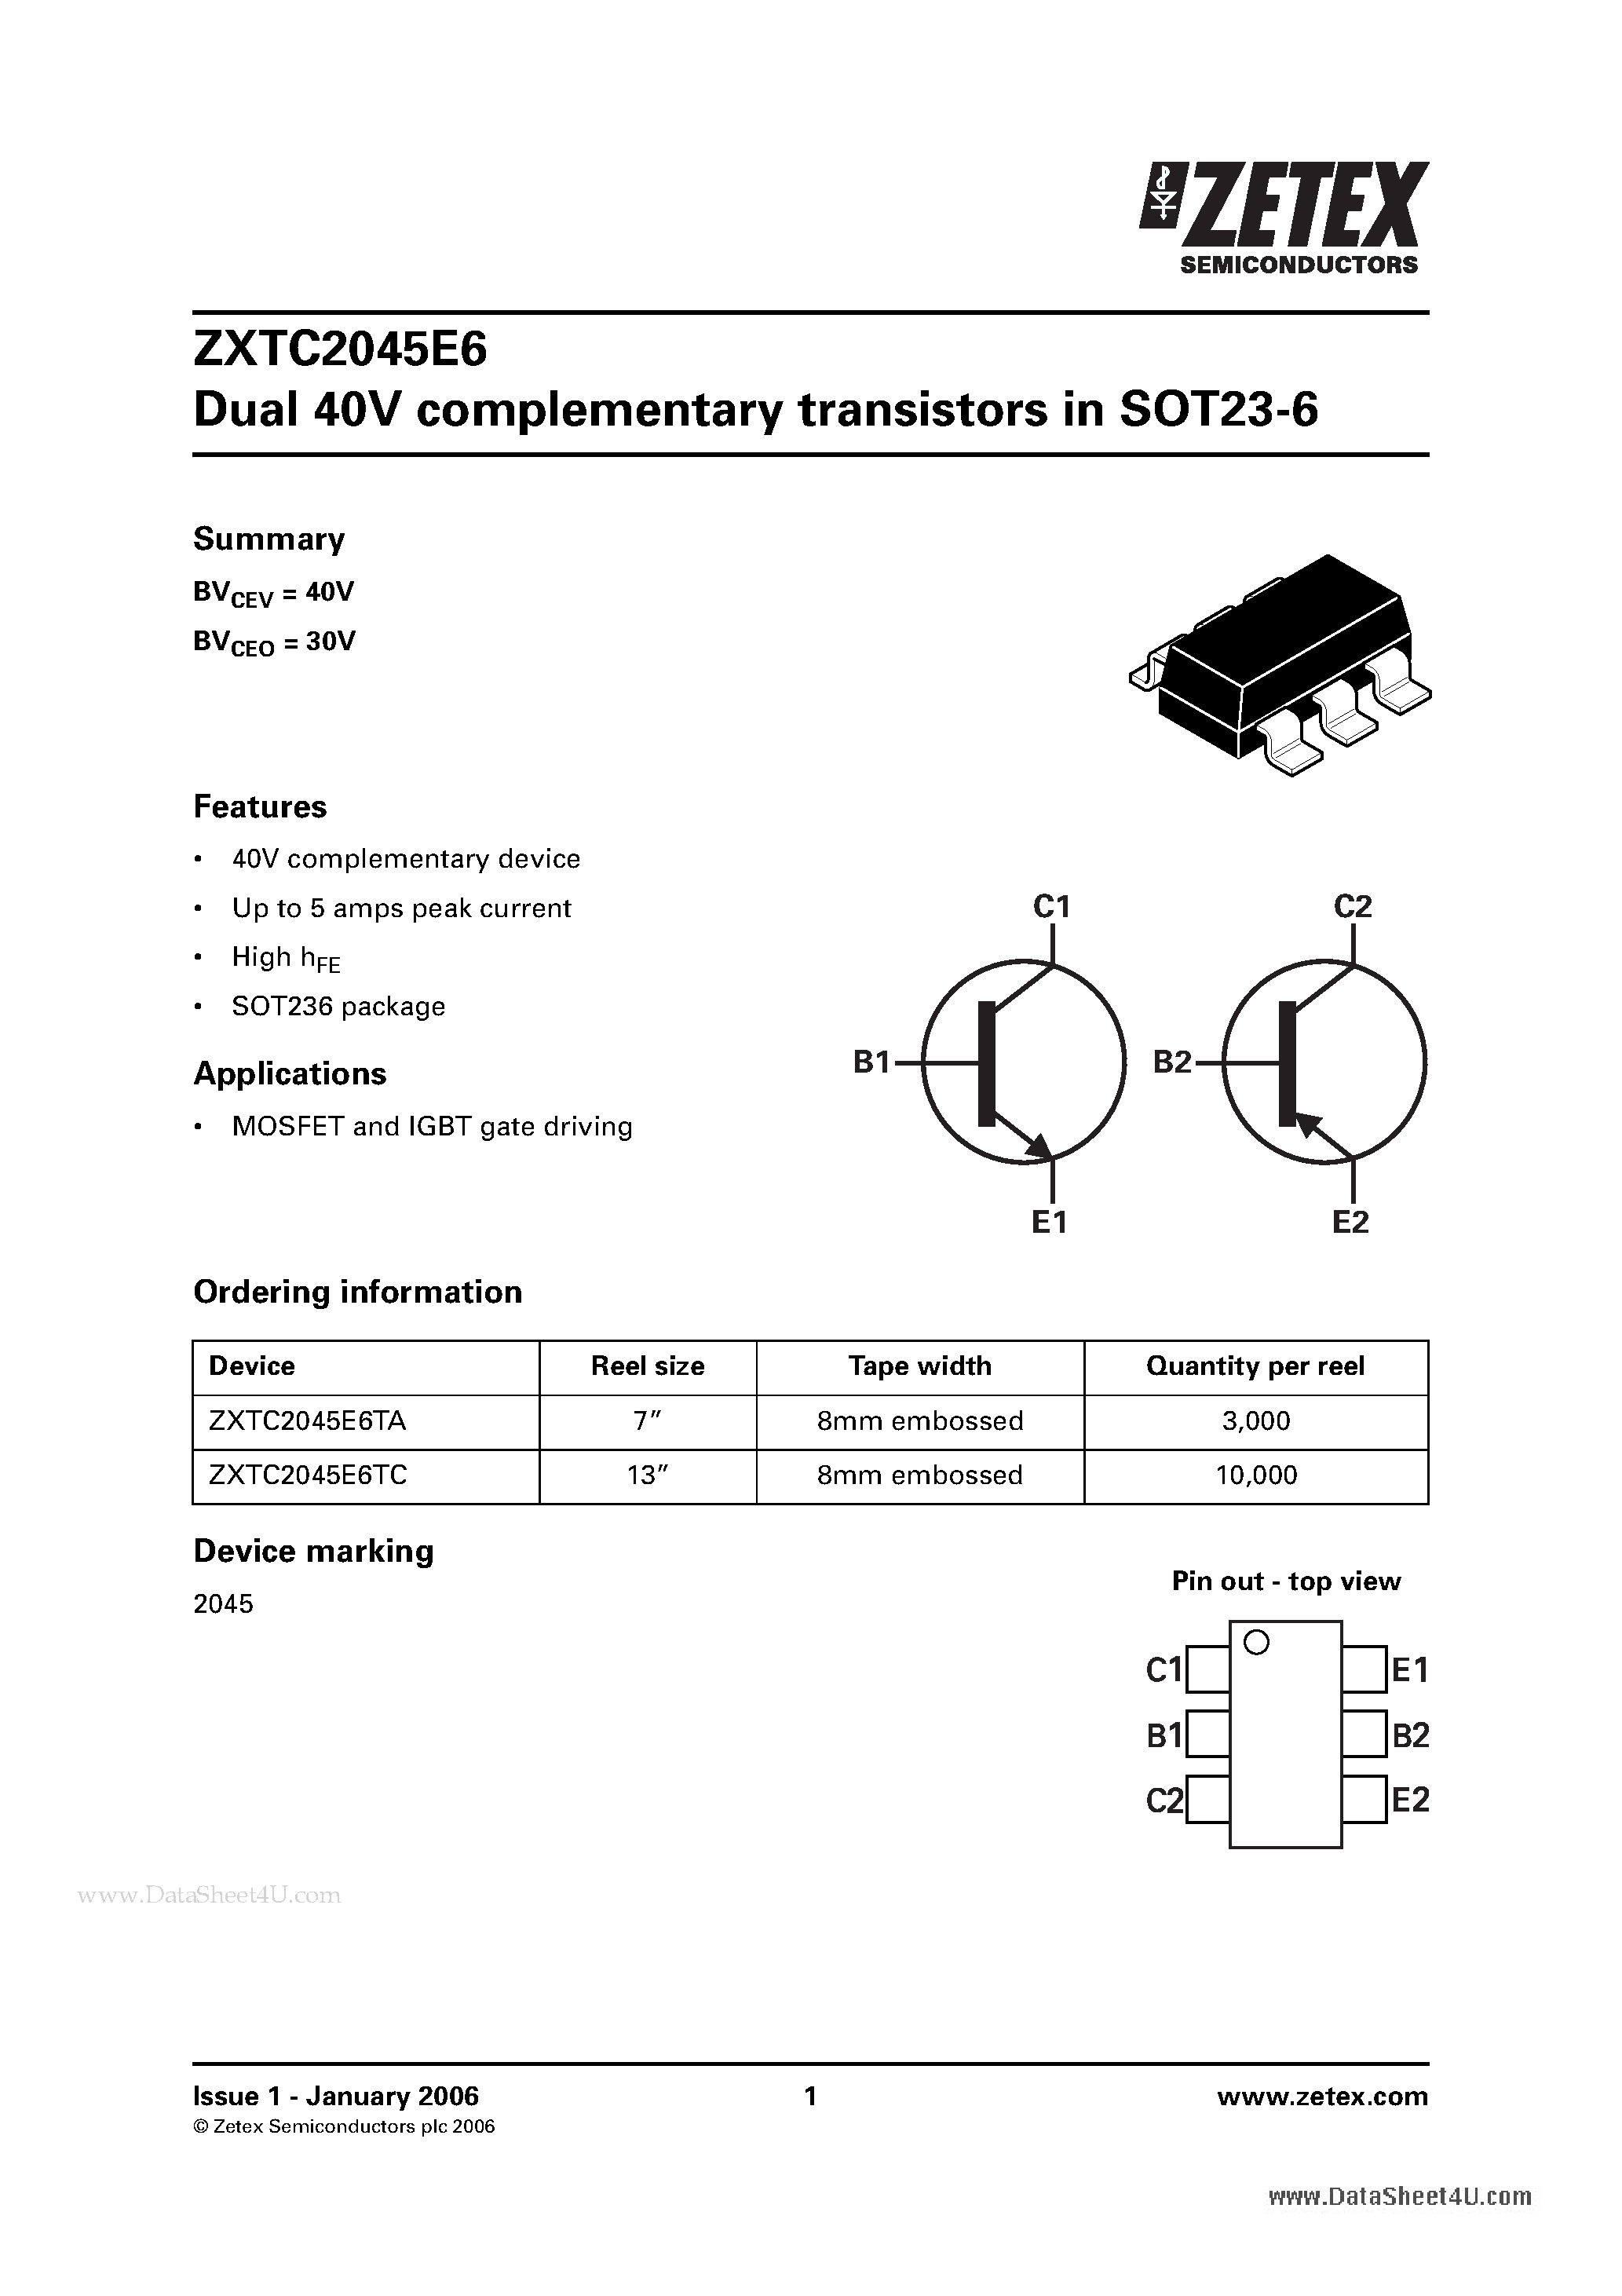 Даташит ZXTC2045E6 - Dual 40V complementary transistors страница 1